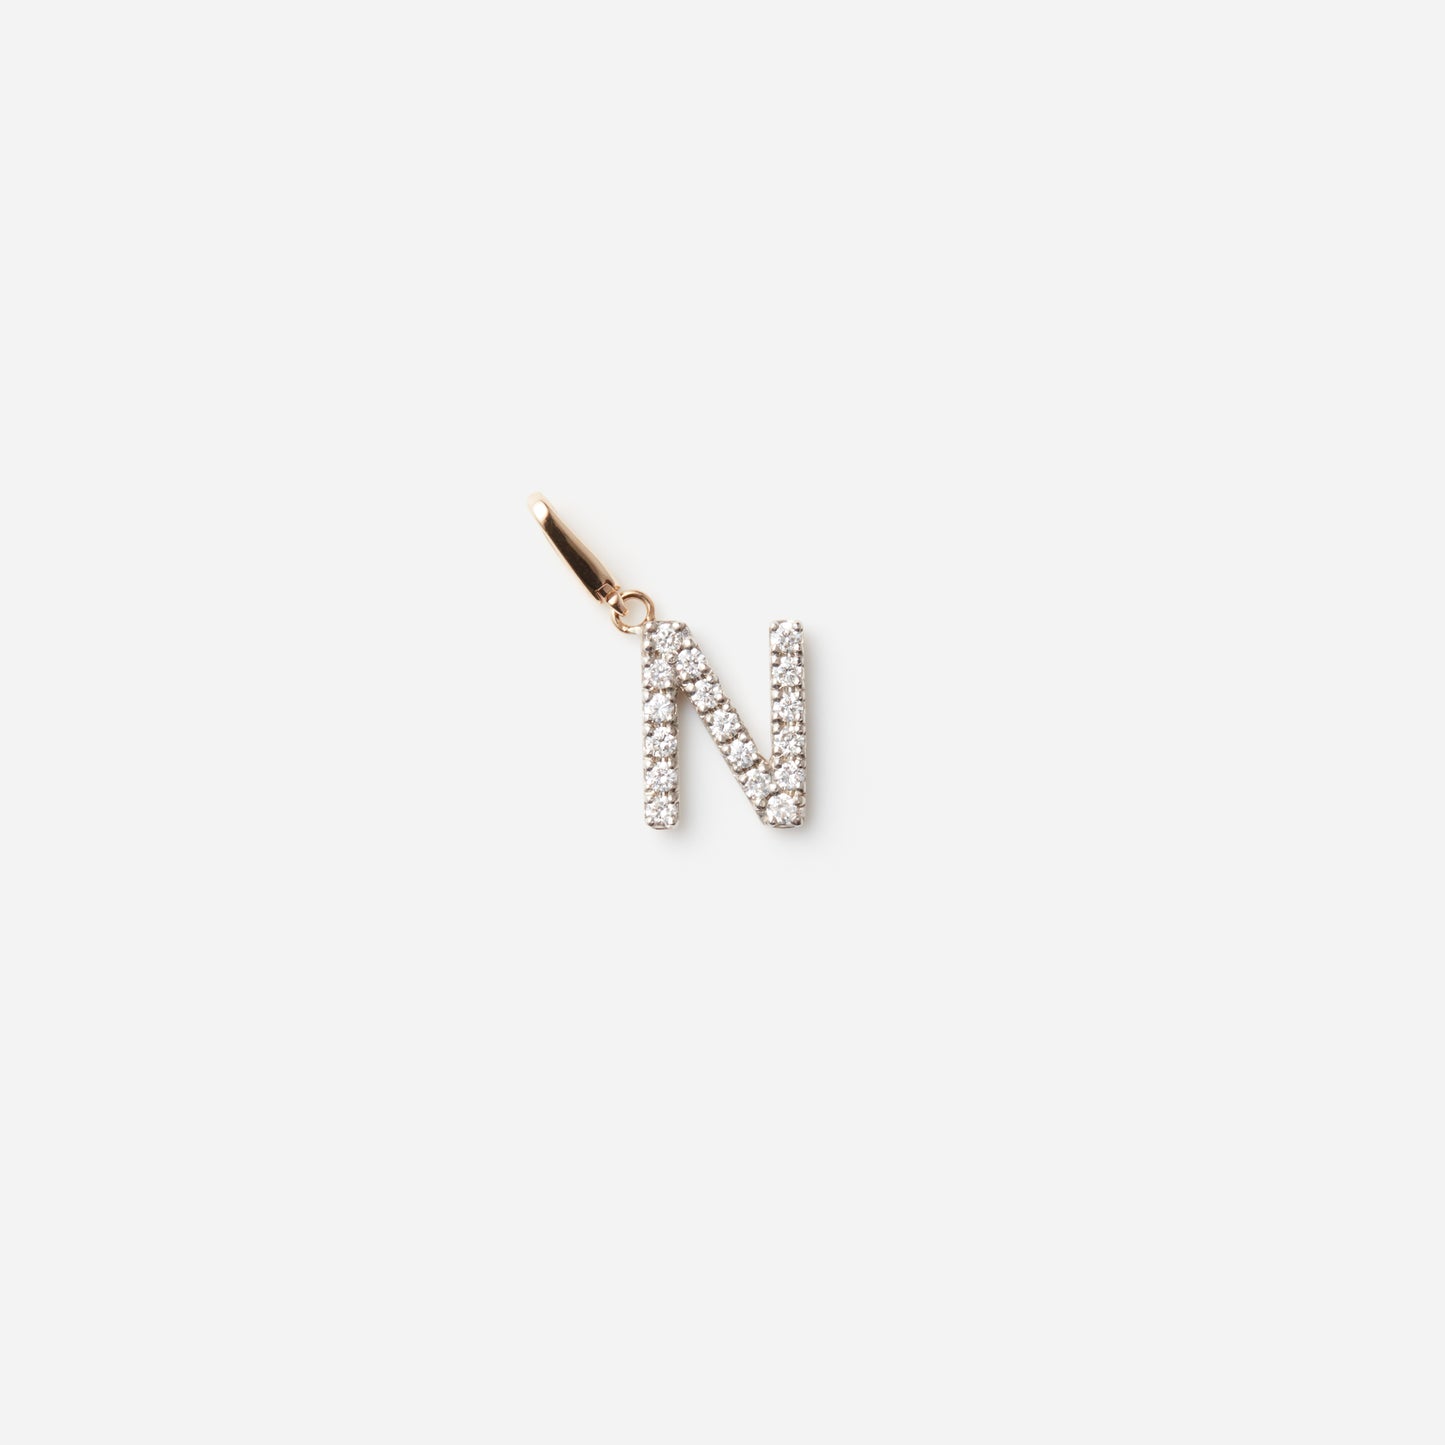 Symbol charm "N"